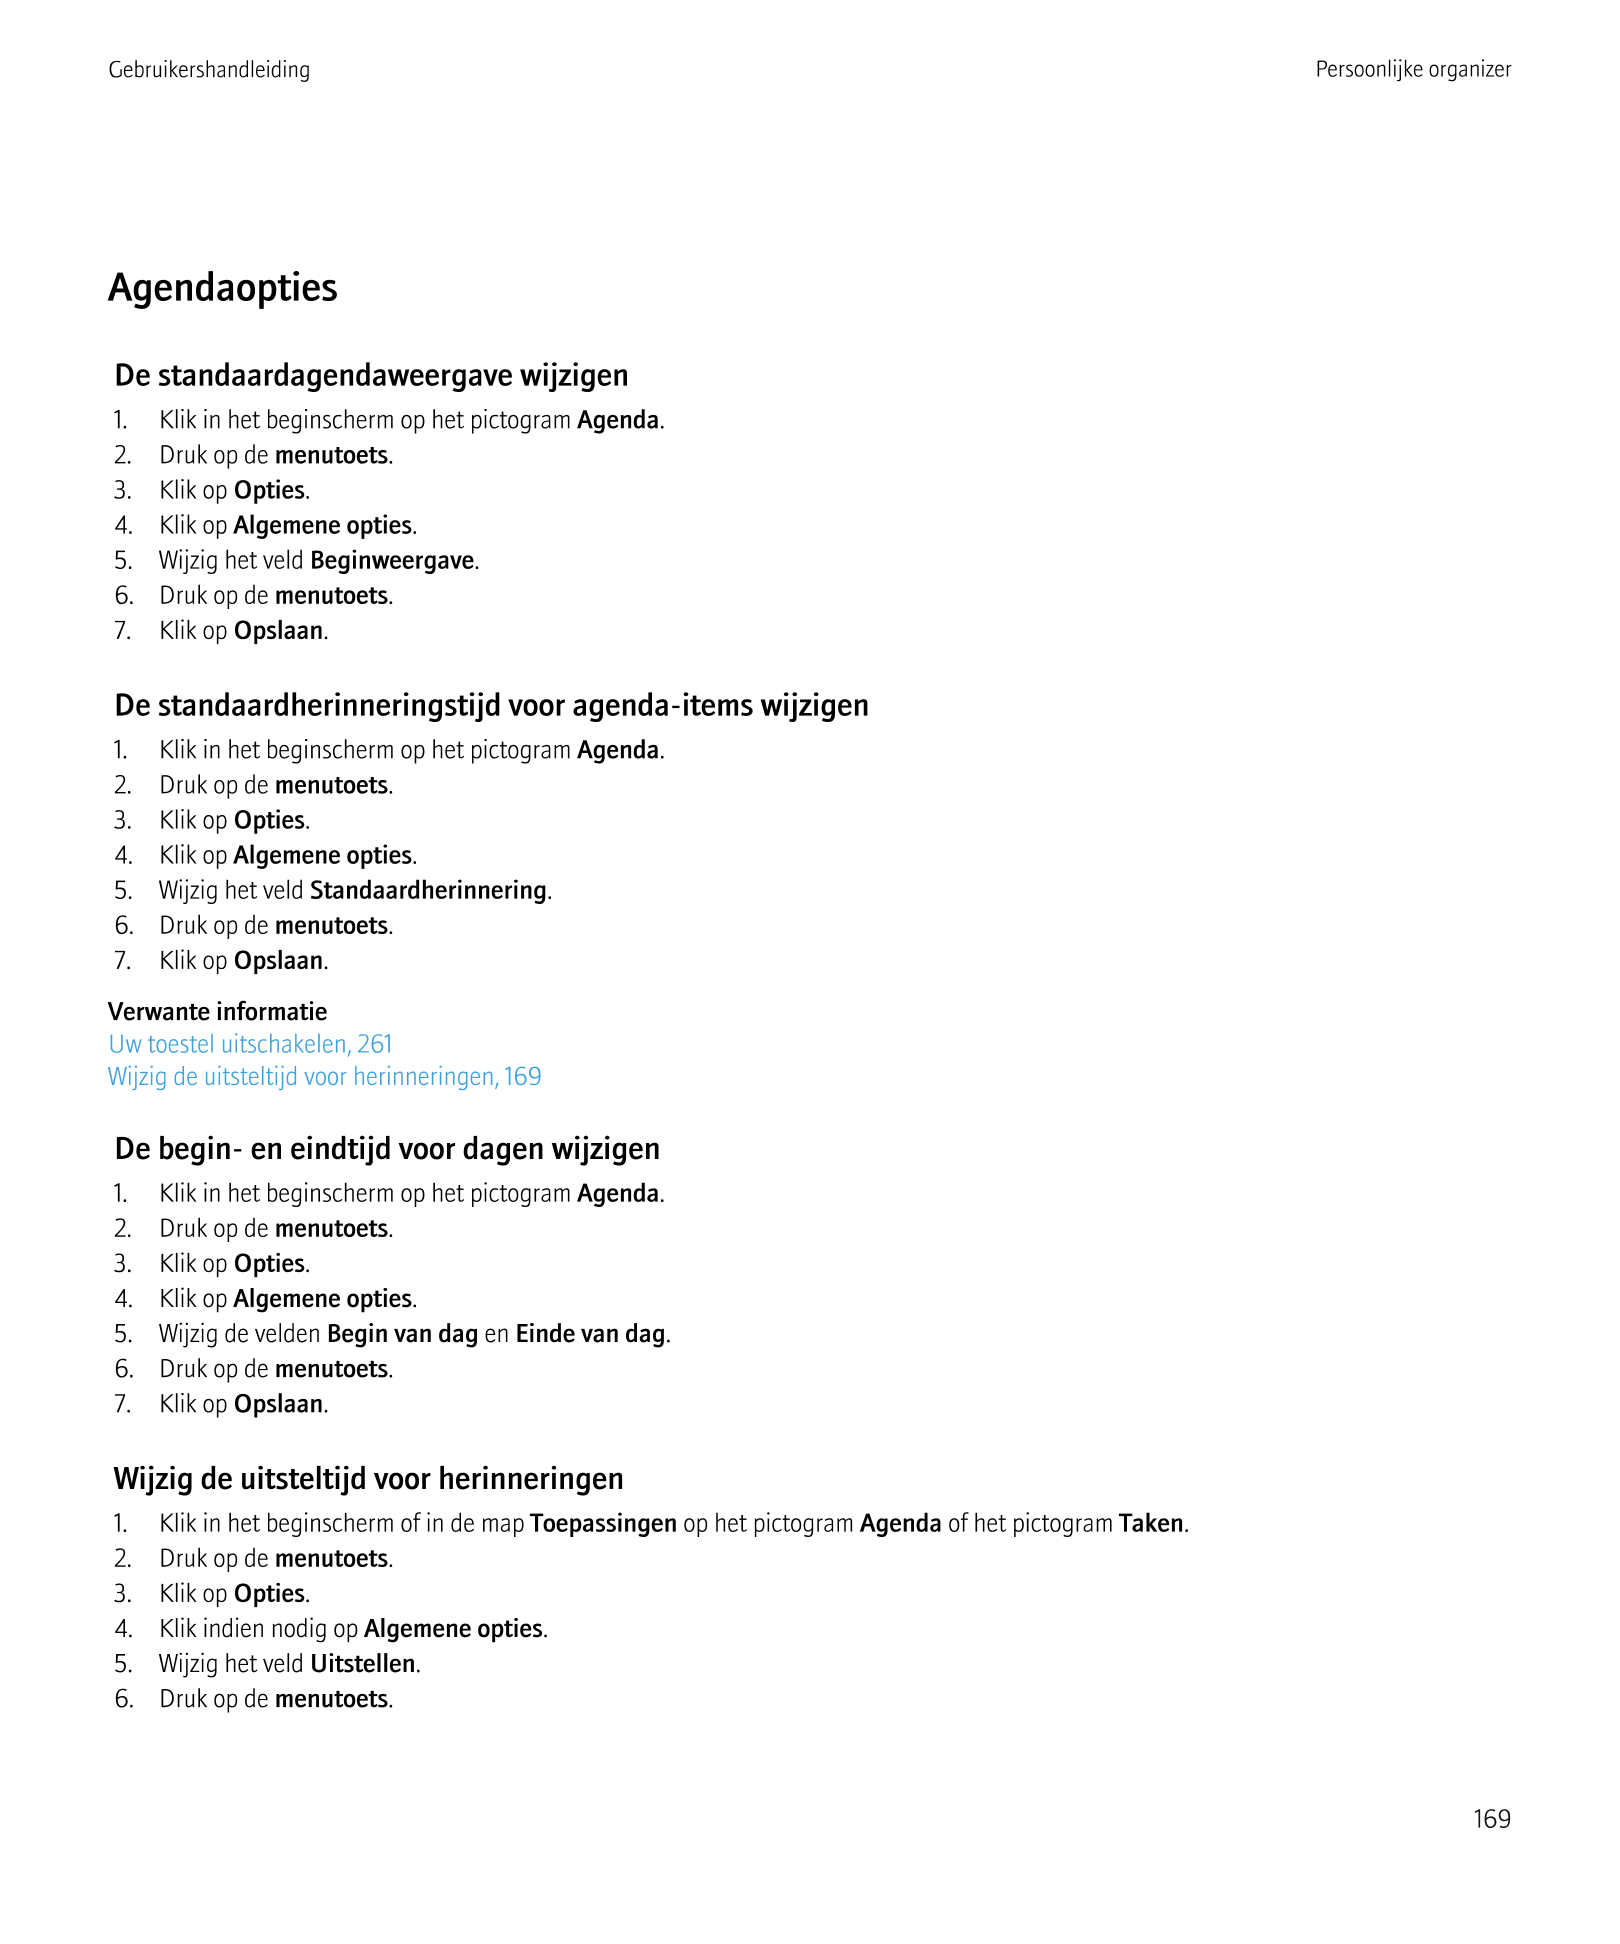 Gebruikershandleiding Persoonlijke organizer
Agendaopties
De standaardagendaweergave wijzigen
1.     Klik in het beginscherm op 